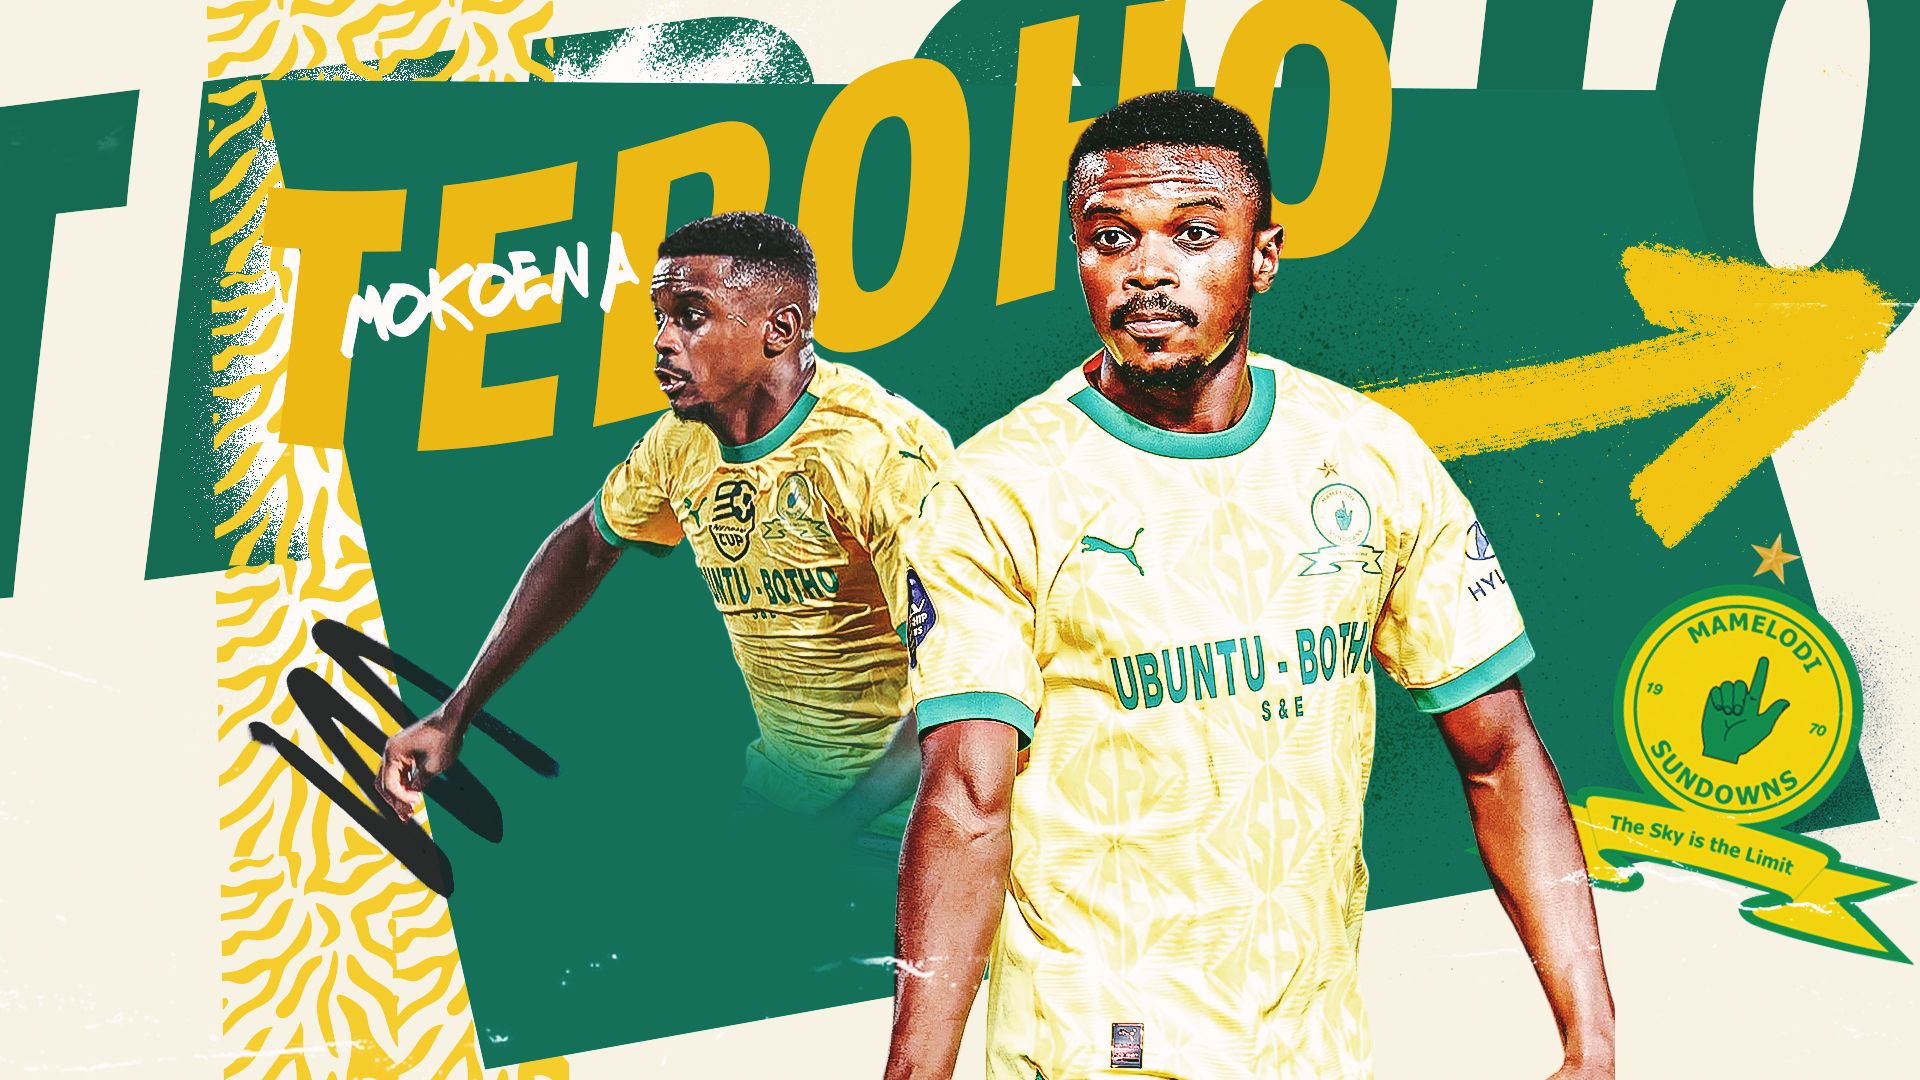 Mamelodi Sundowns reach agreement with Bafana Bafana star - Reports